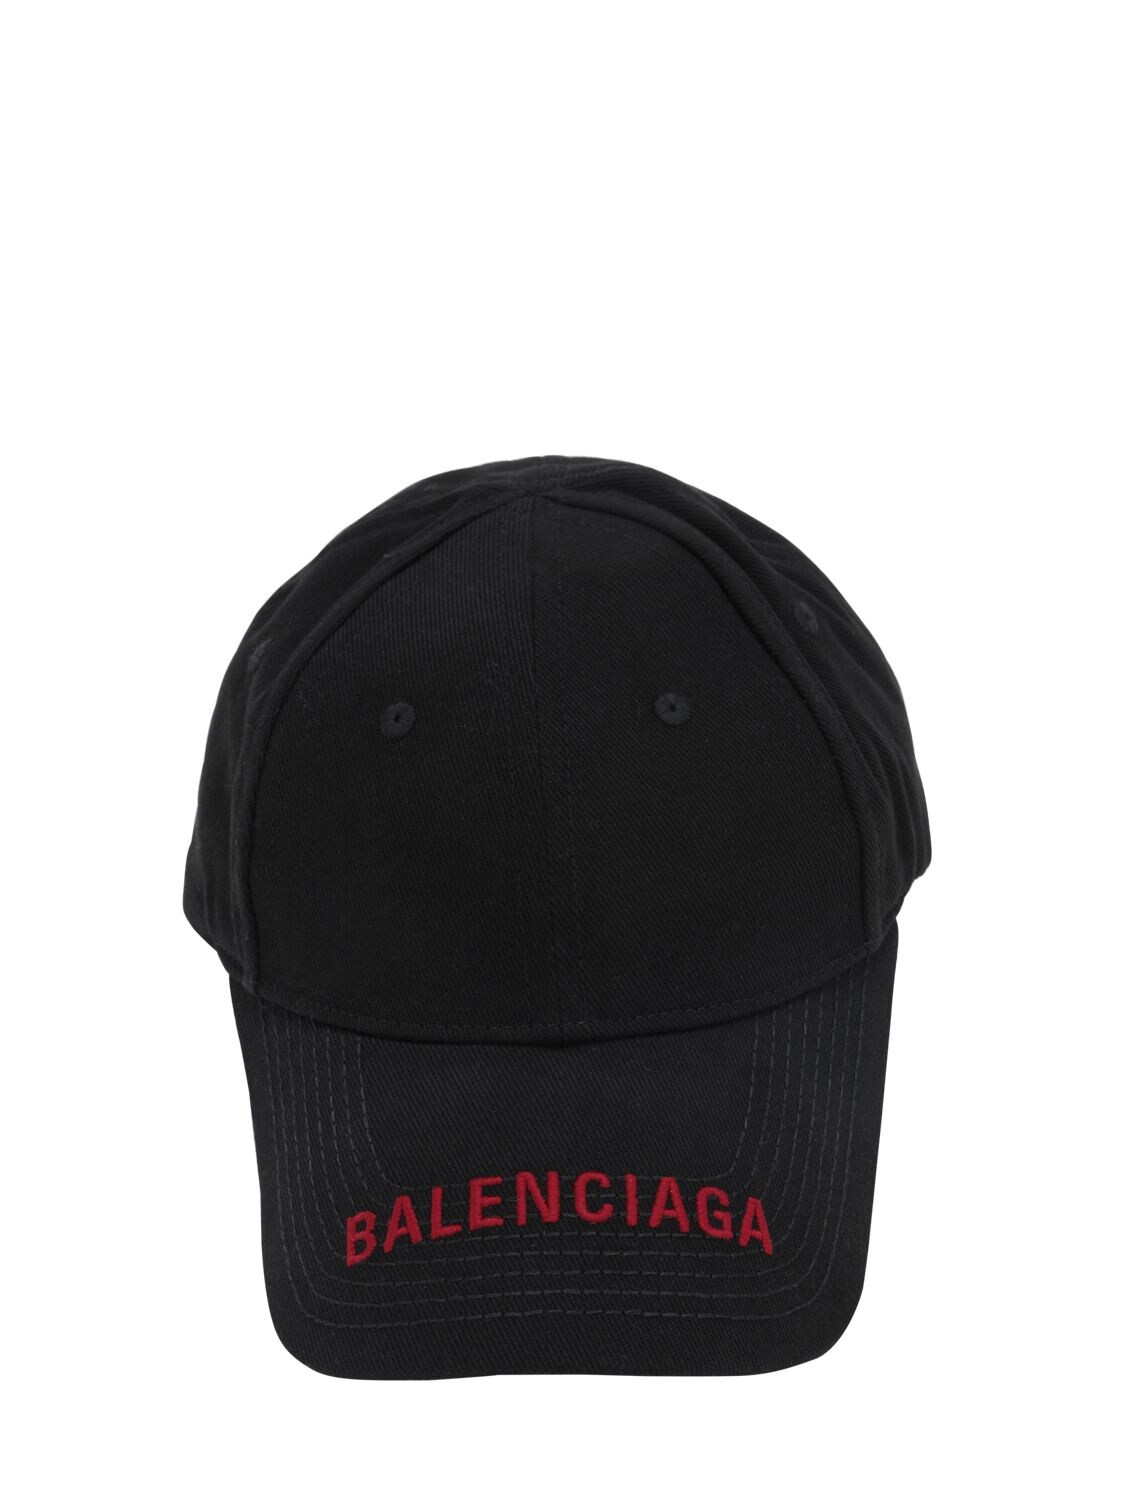 BALENCIAGA LOGO刺绣华达呢棒球帽,70IOFX001-MTA3MW2